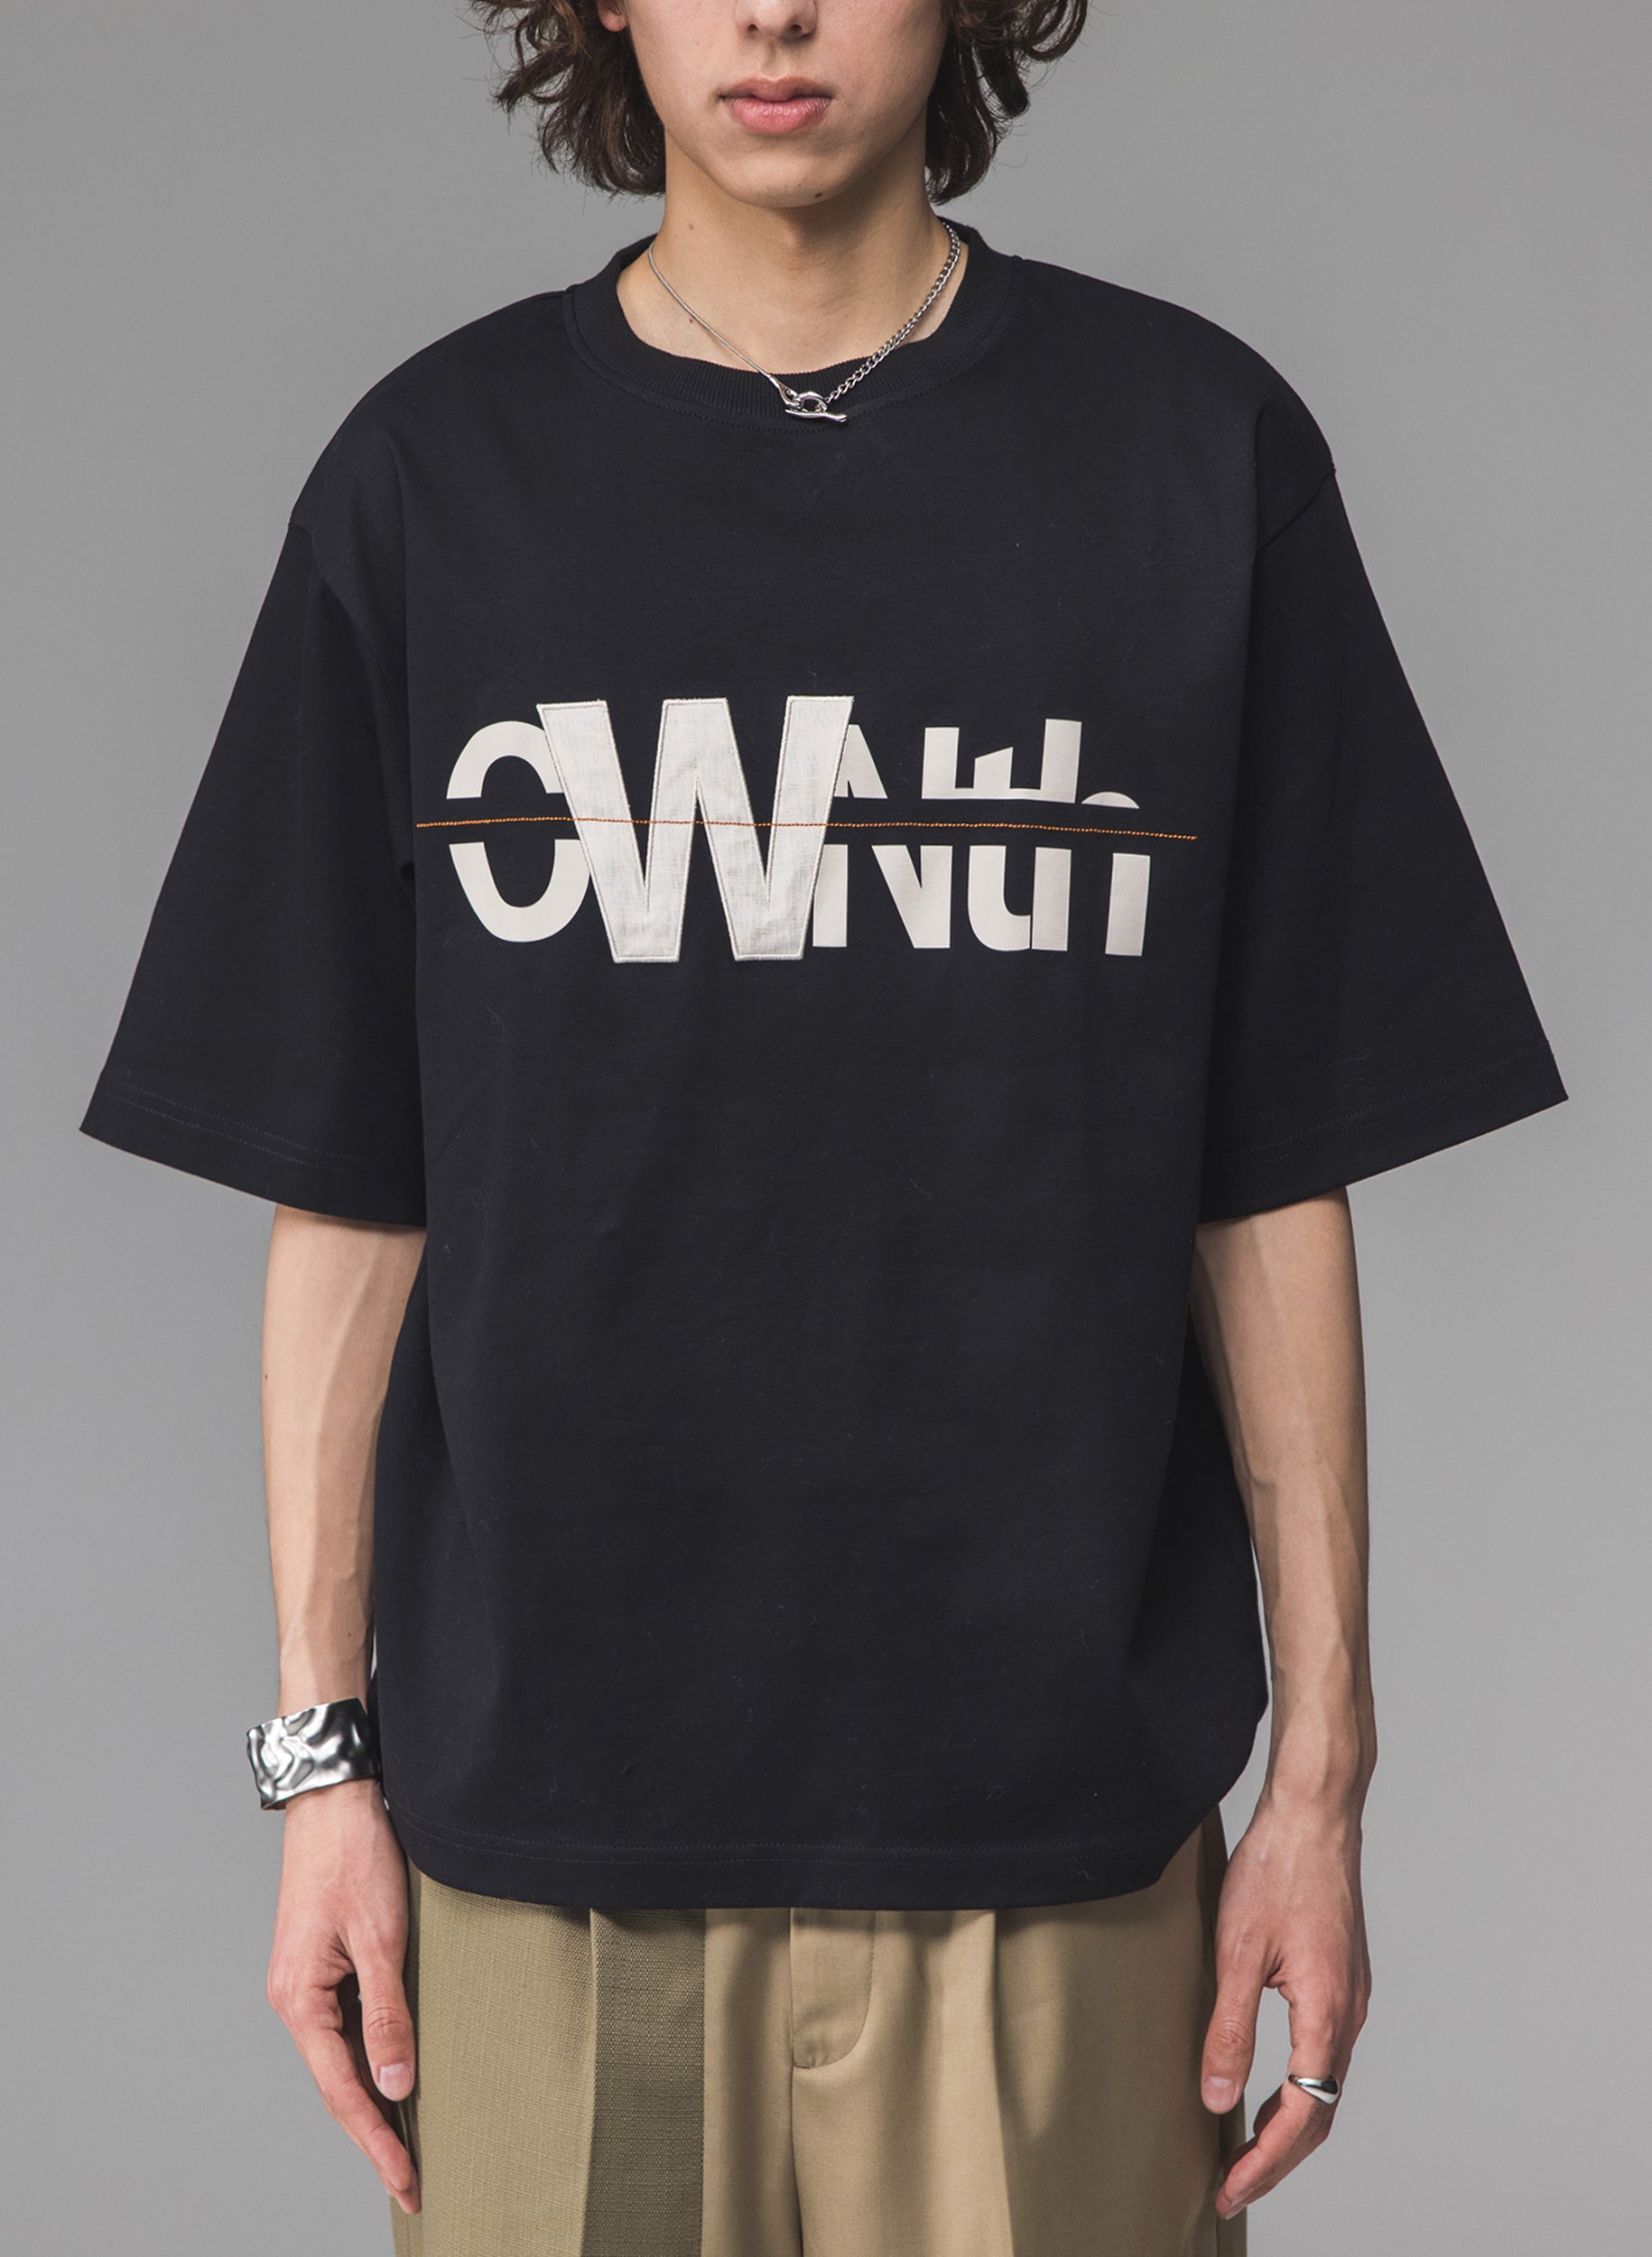 OWNth-オンス-】パッチデザインロゴTシャツ -ユニセックス-